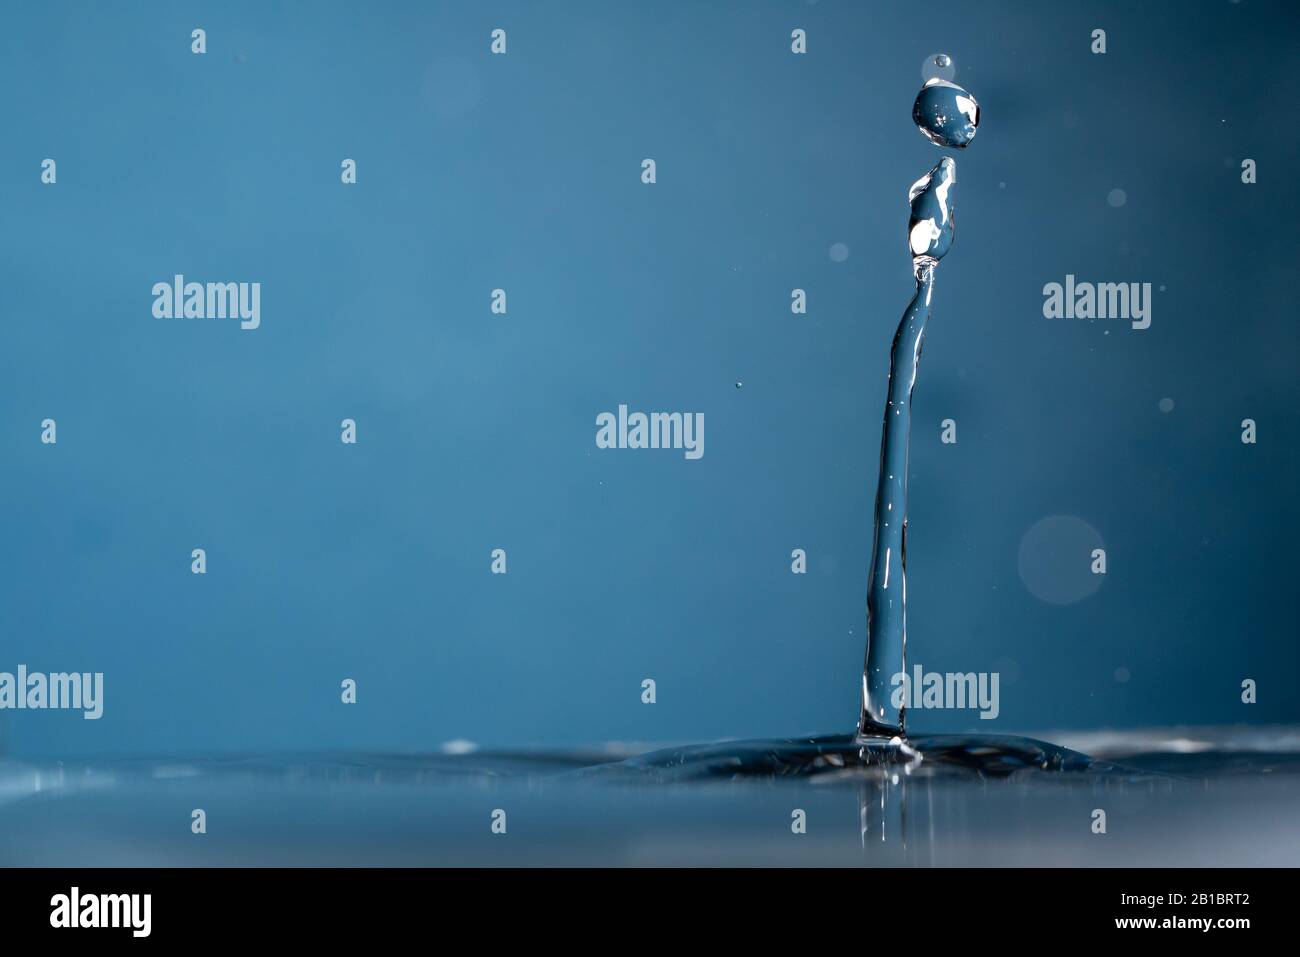 Frisches klares Wasser auf blauem Hintergrund Stockfoto